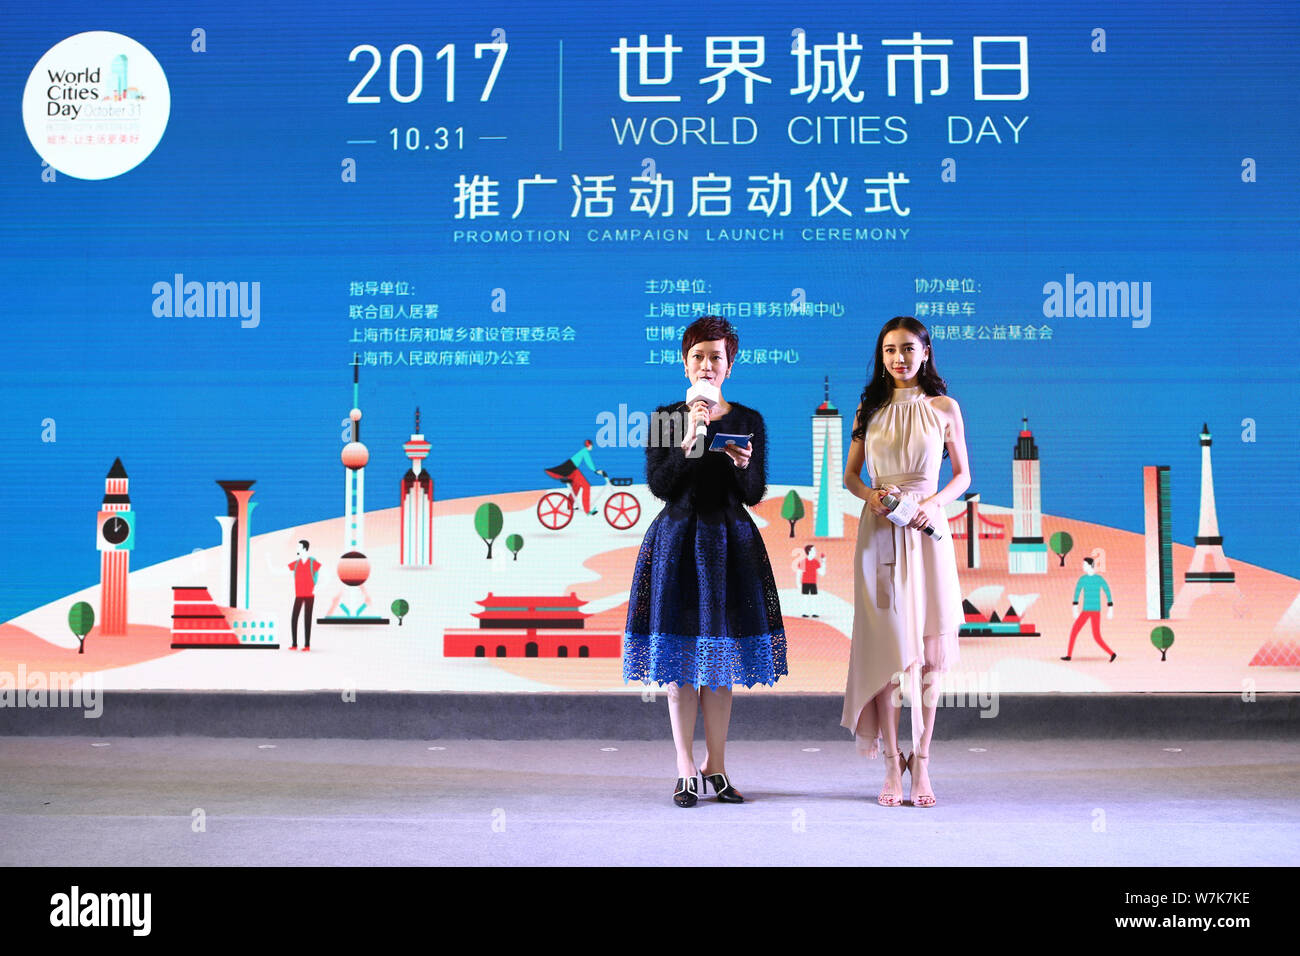 Hong Kong Schauspielerin Angelababy, rechts, nimmt die Zeremonie der Welt 2017 Städte Tag Werbekampagne in Shanghai, China, 29. September 2017 Stockfoto